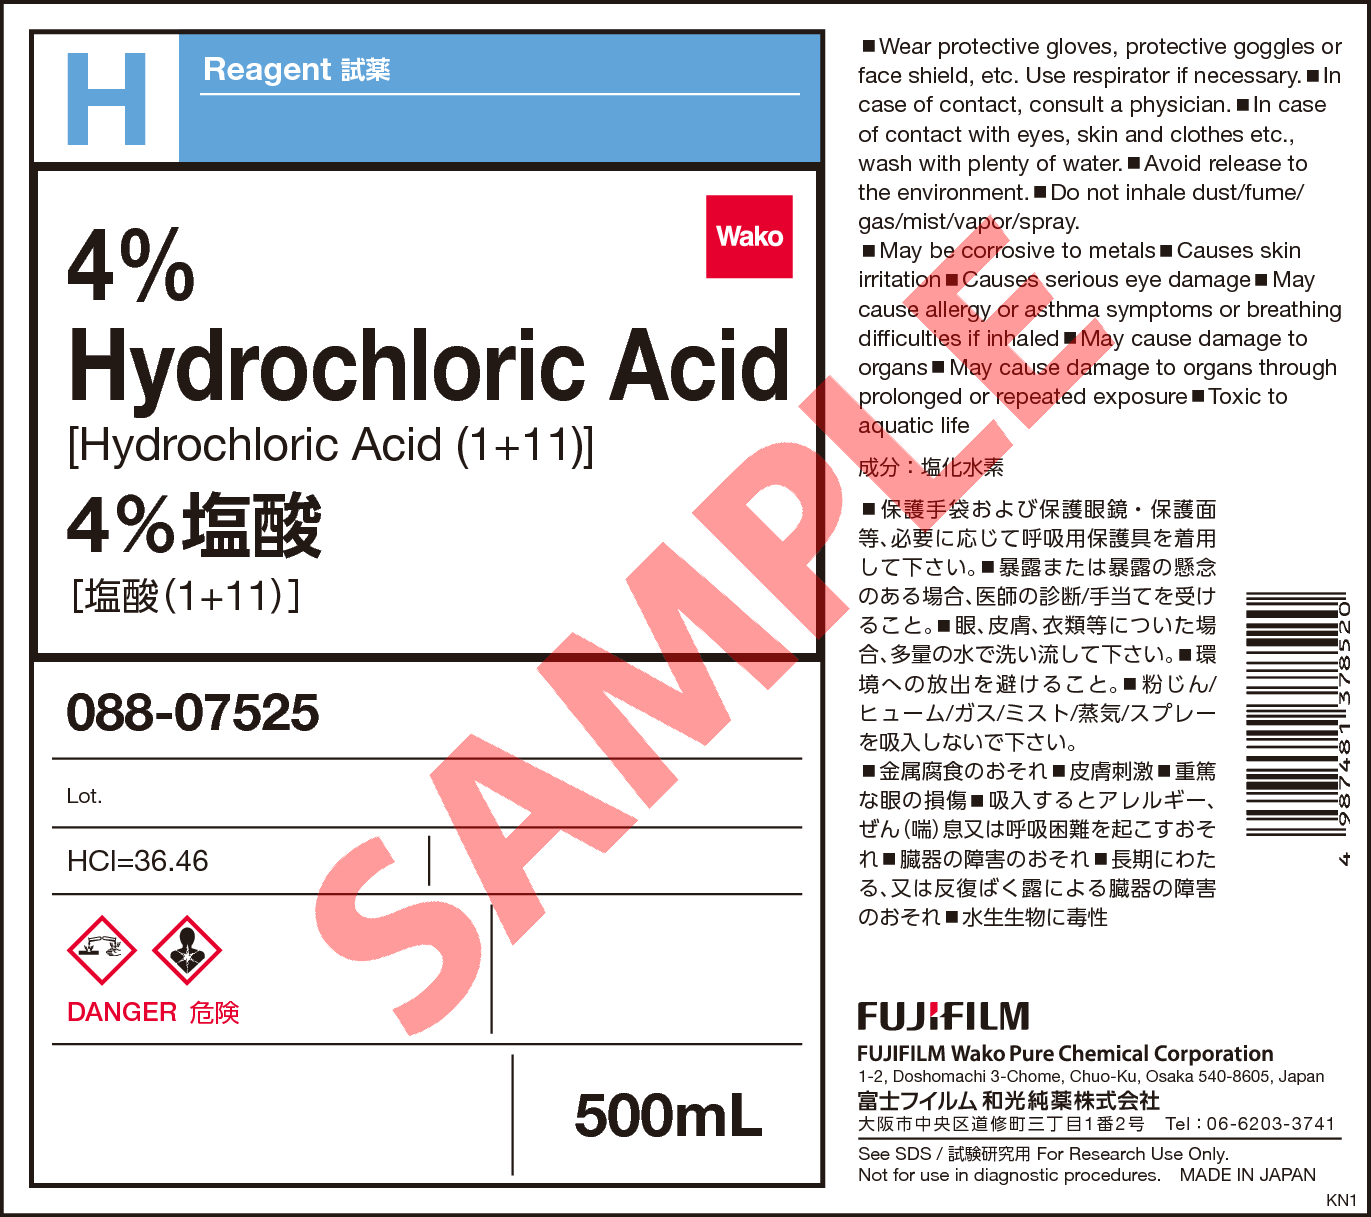 7647-01-0・4% 塩酸・4% Hydrochloric Acid・088-07525【詳細情報 